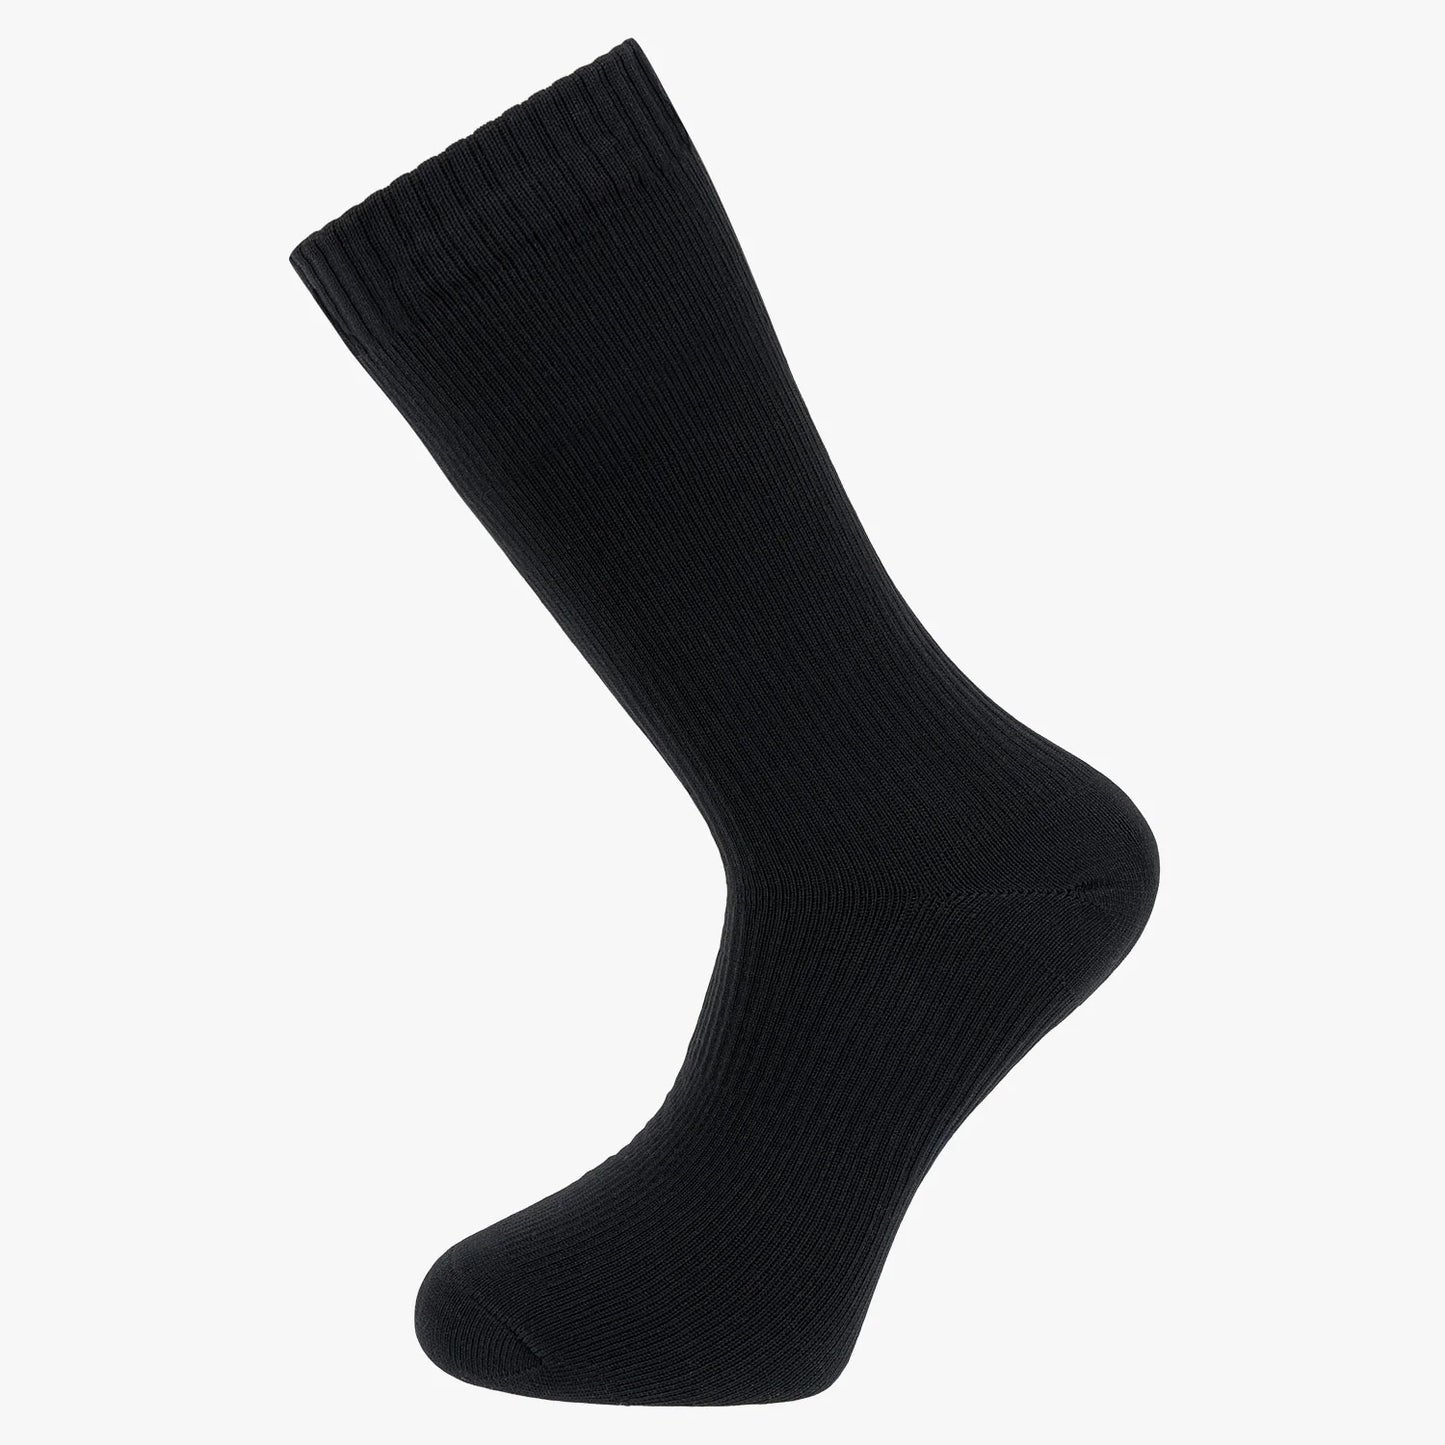 Highlander Waterproof Socks - Black